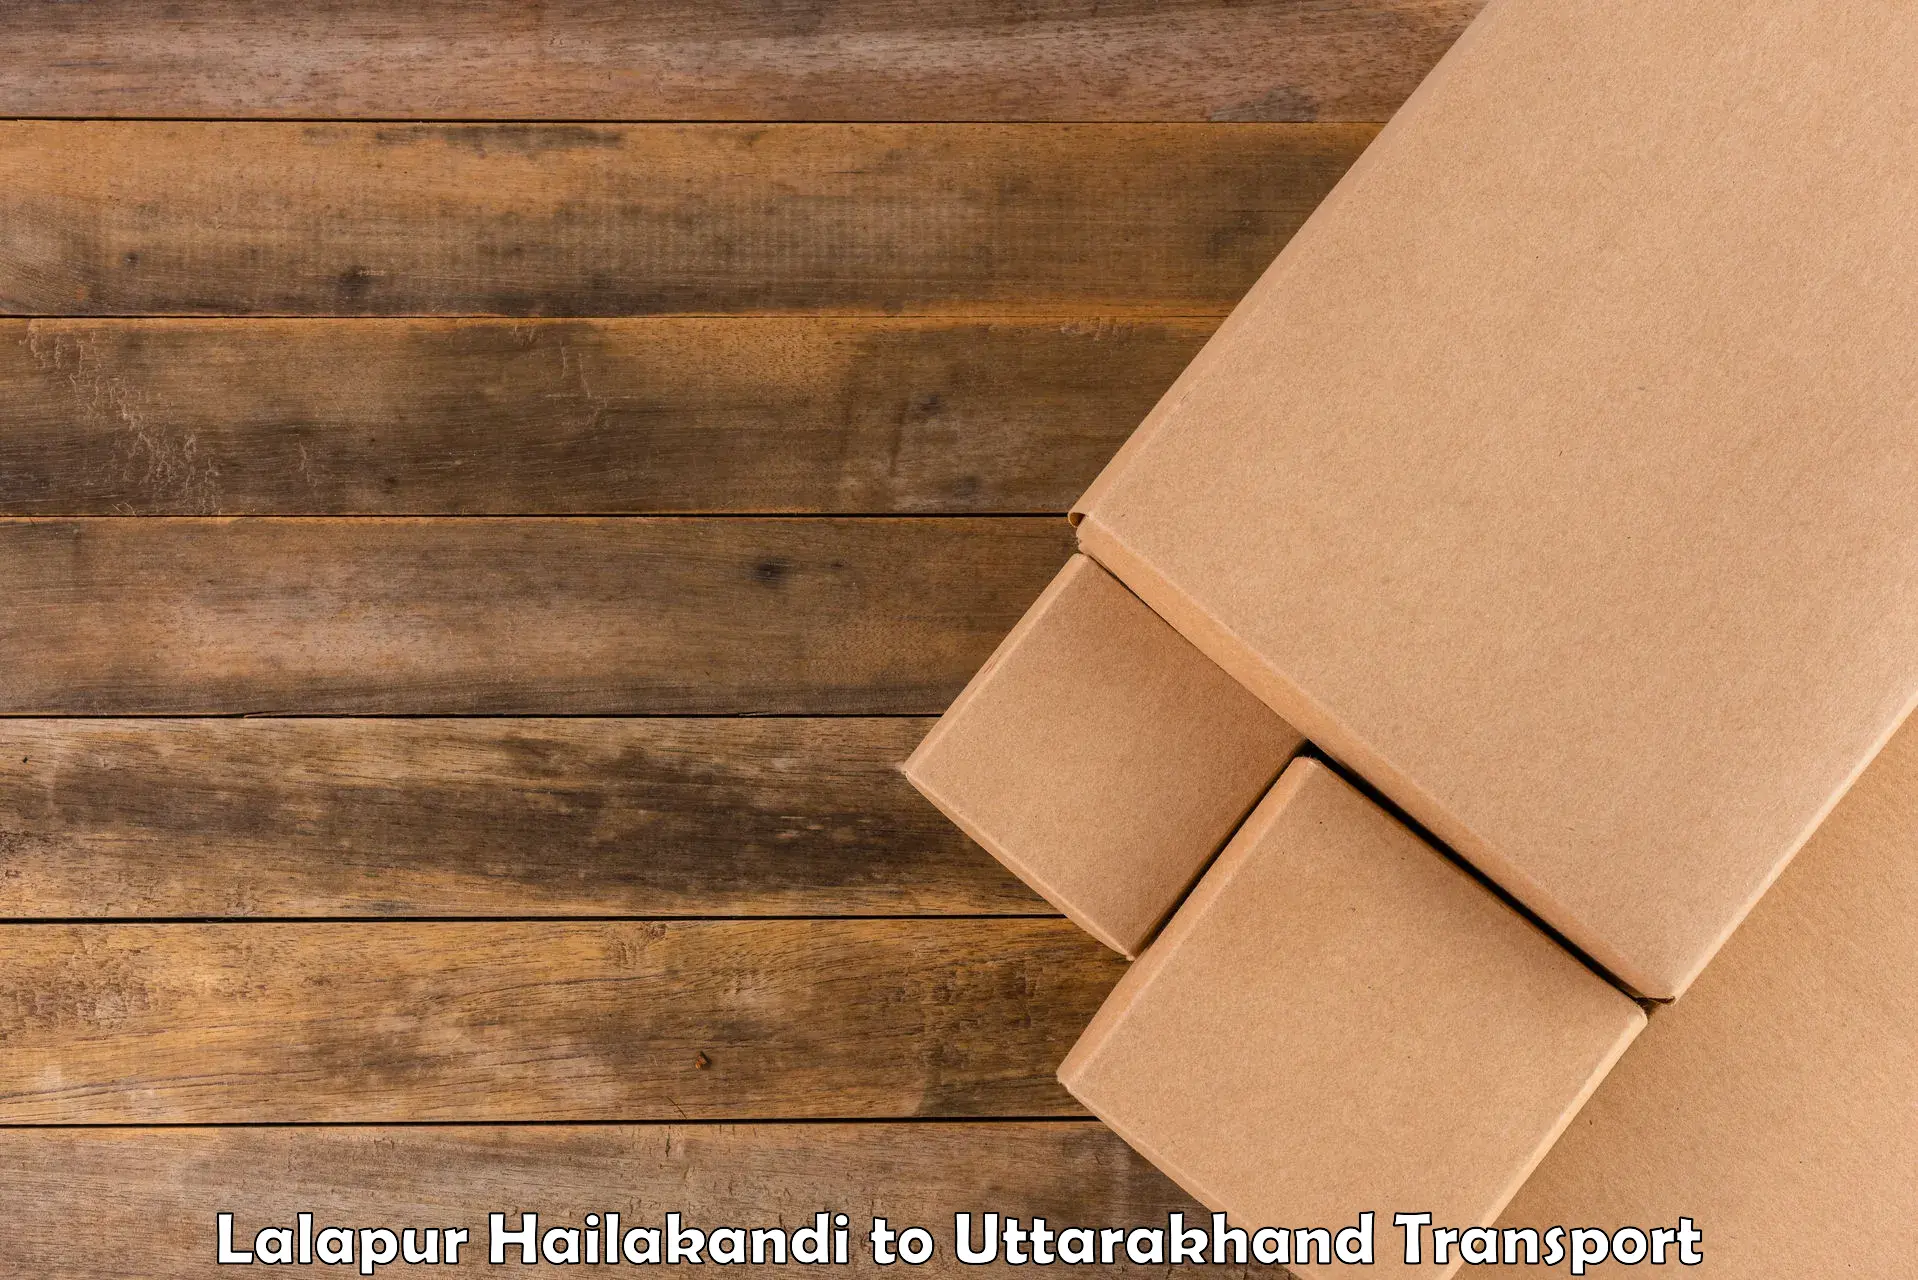 Cycle transportation service Lalapur Hailakandi to Uttarakhand